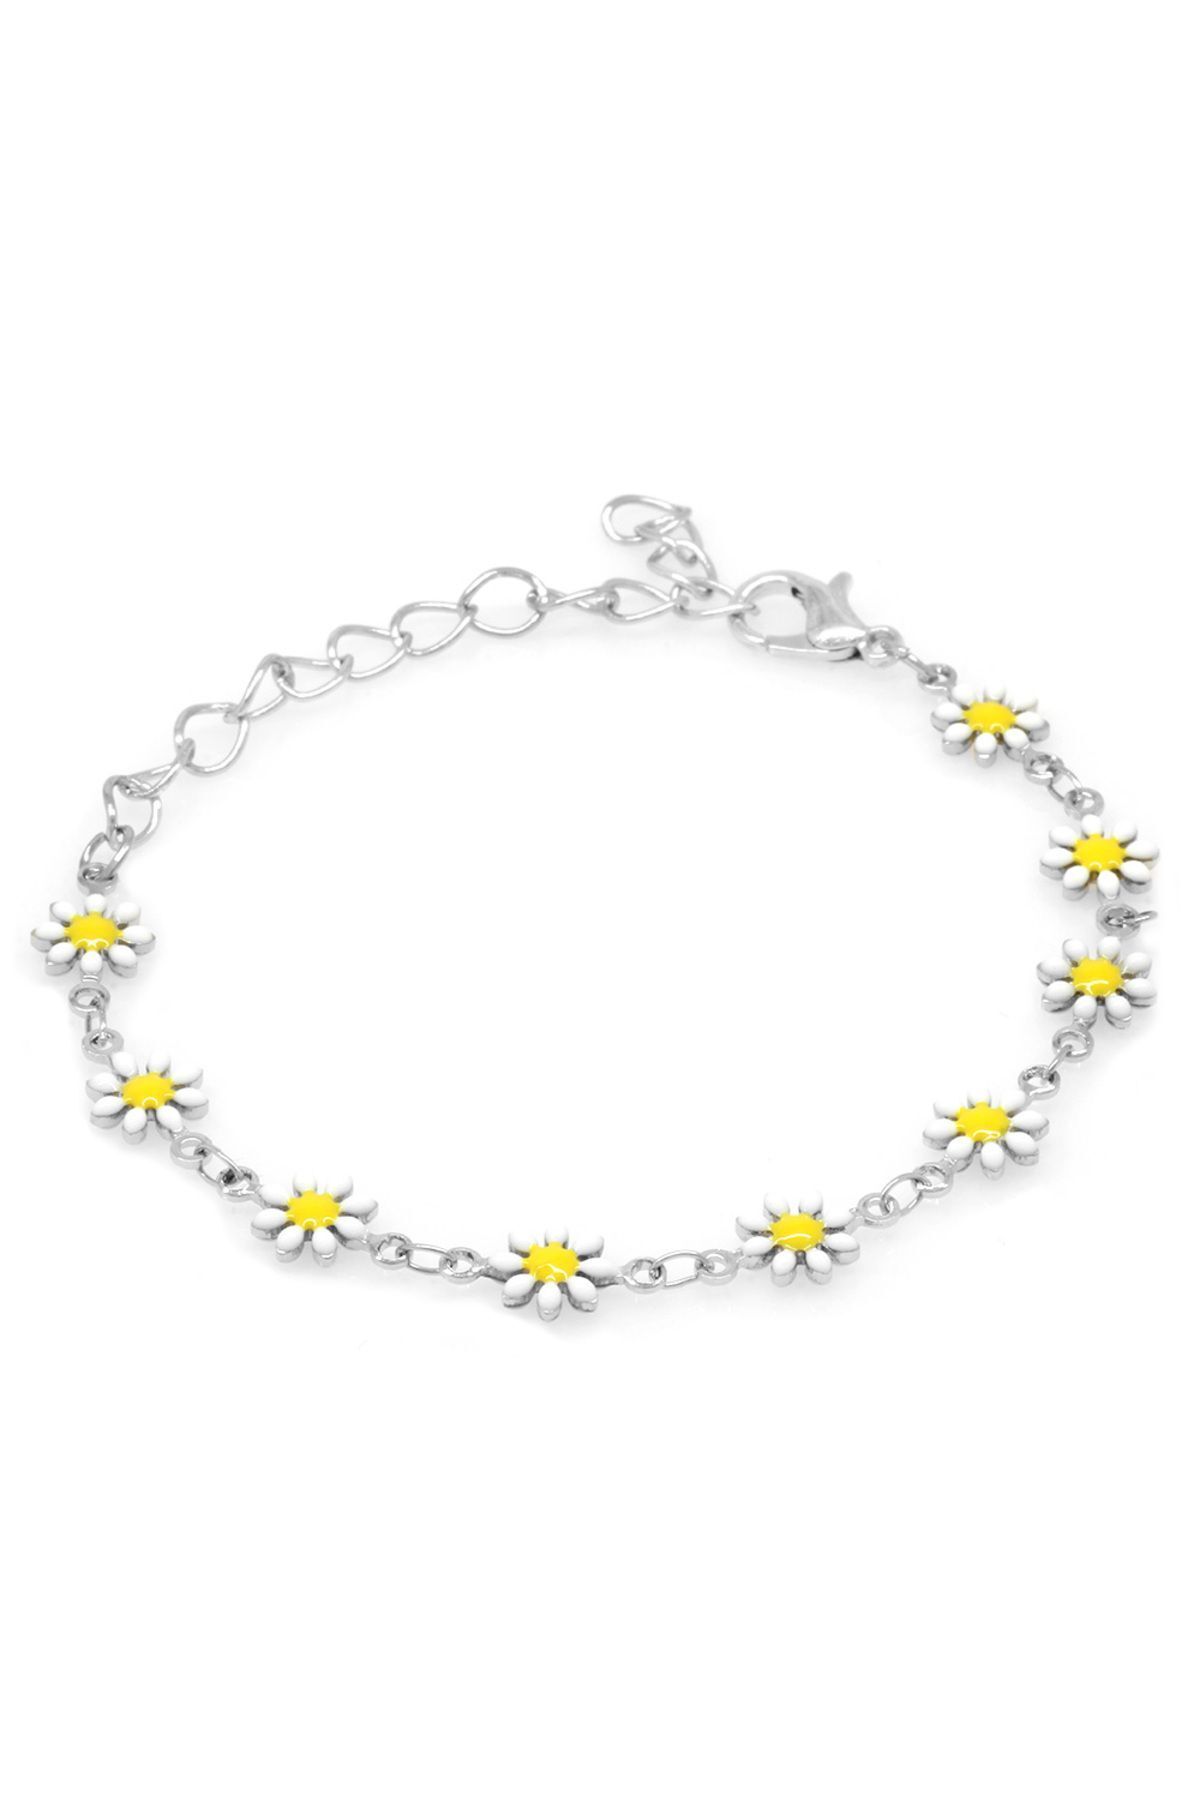 Tesbihane Silver Renk Metal Zincirli Sarı-Beyaz Mineli Kır Çiçeği Detaylı Kadın Bileklik